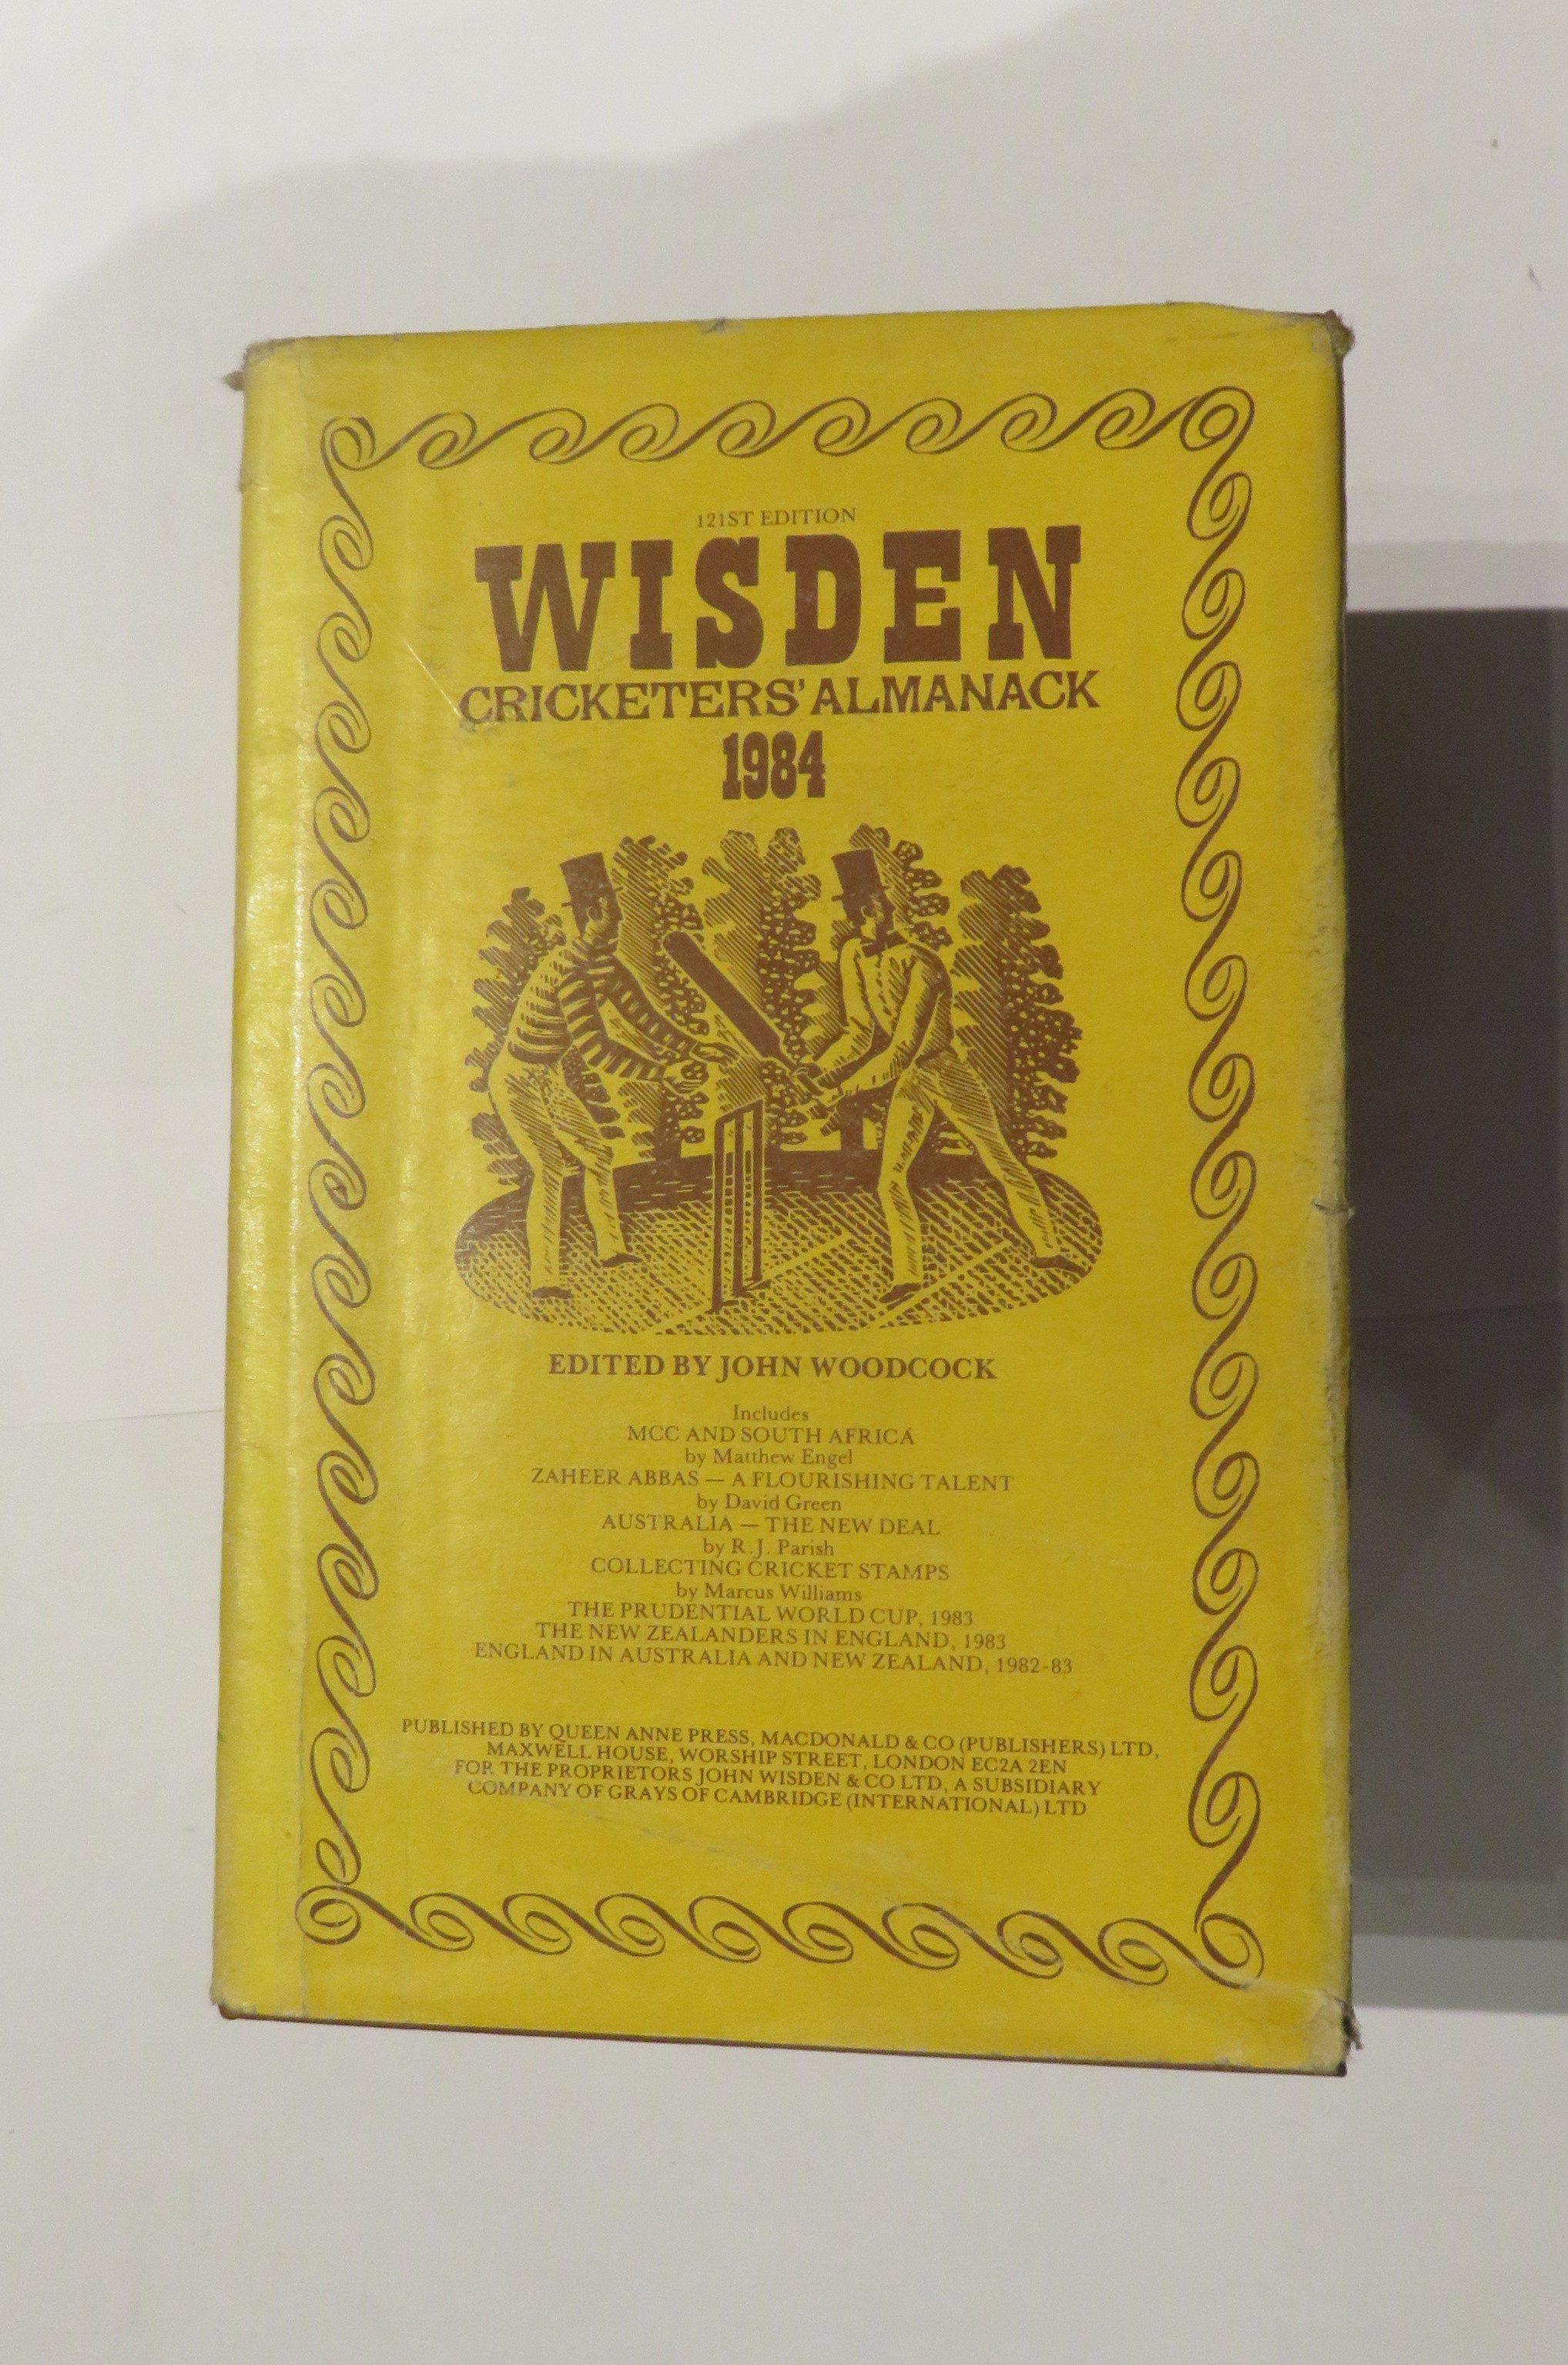 Wisden Cricketers' Almanack 1984